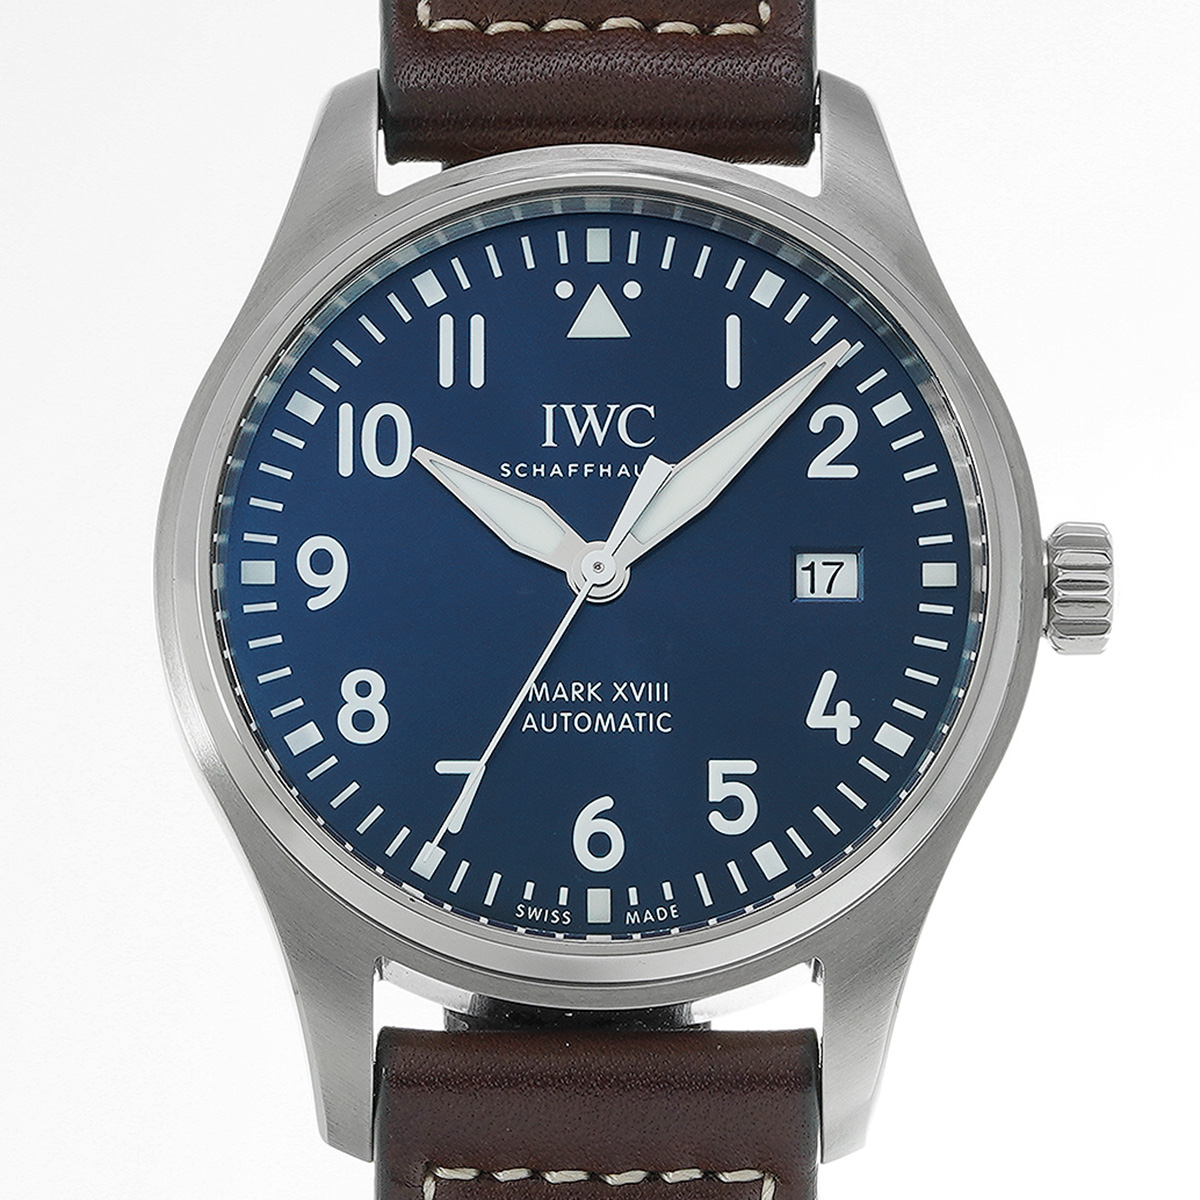 IWC パイロットウォッチ マーク XVIII プティ・プランス IW327010 ブルー メンズ 時計 【中古】【wristwatch】